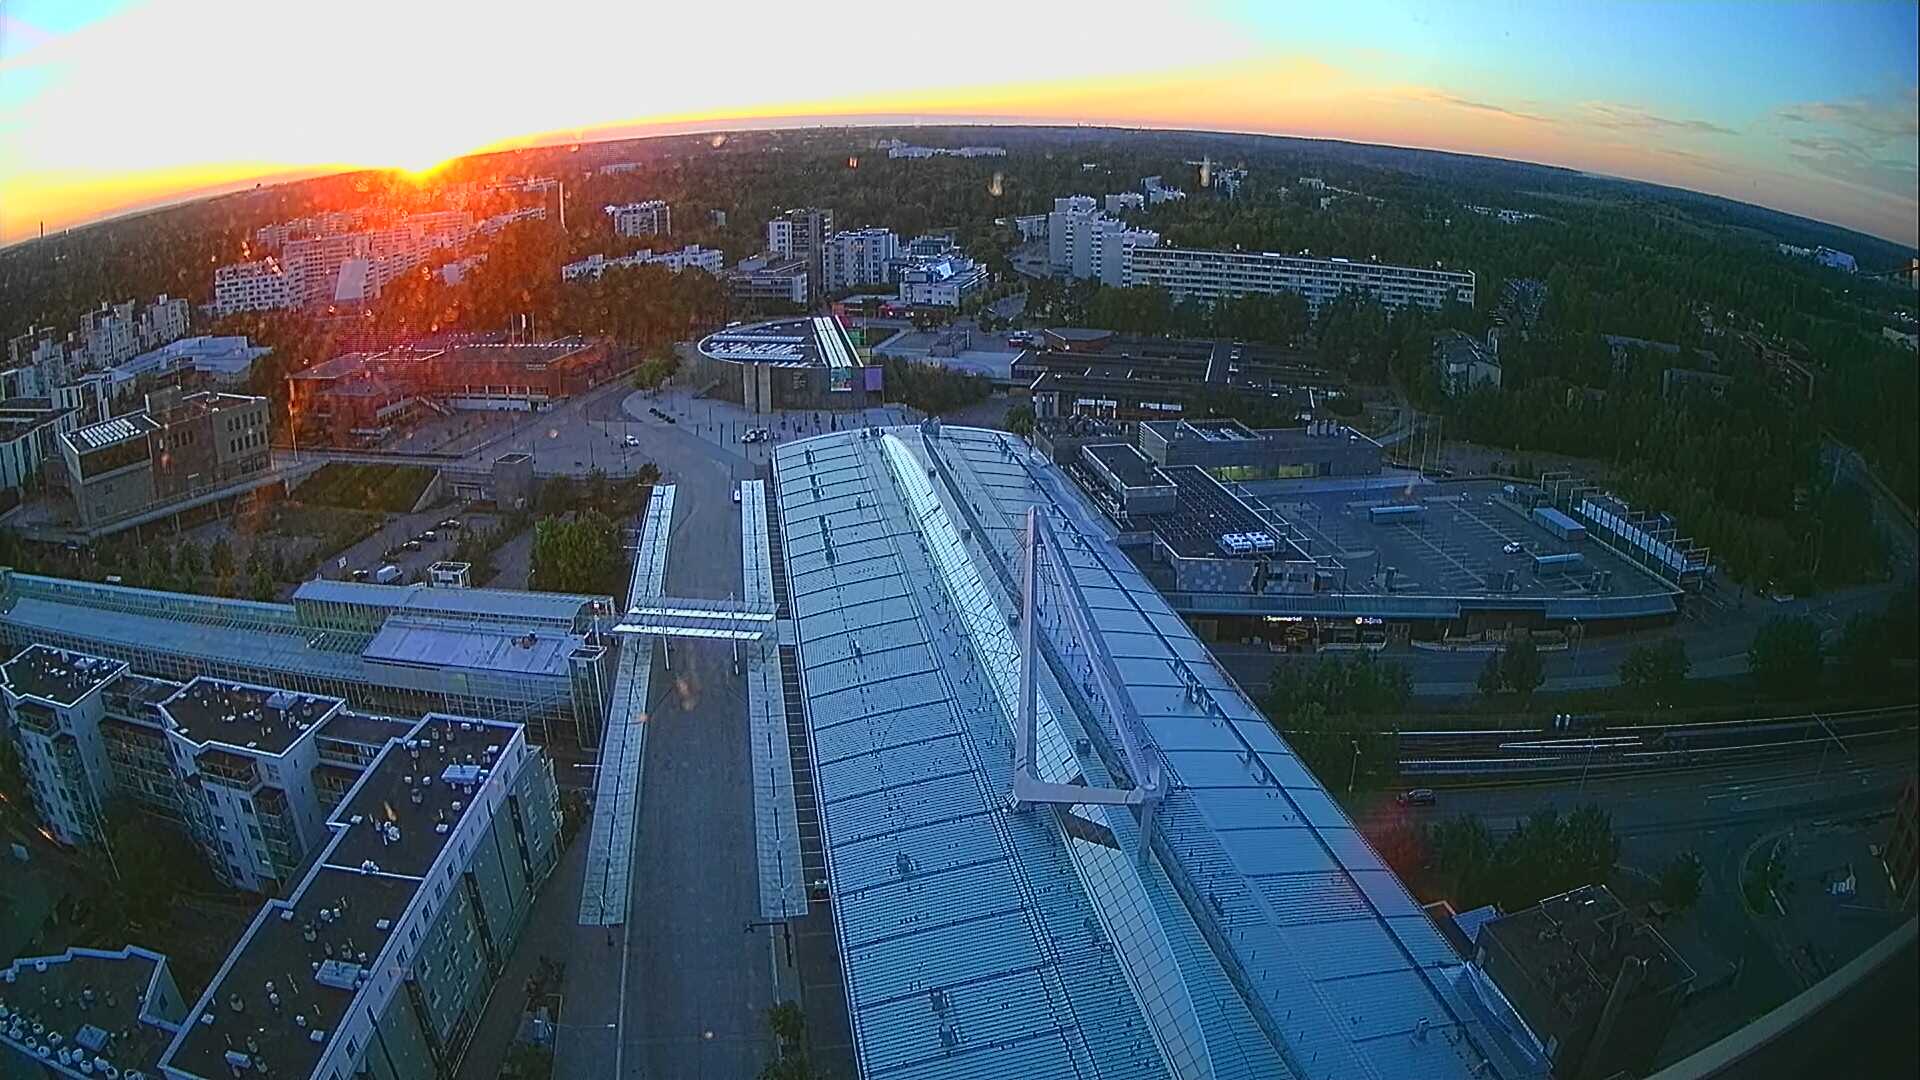 Helsinki Tor. 22:55